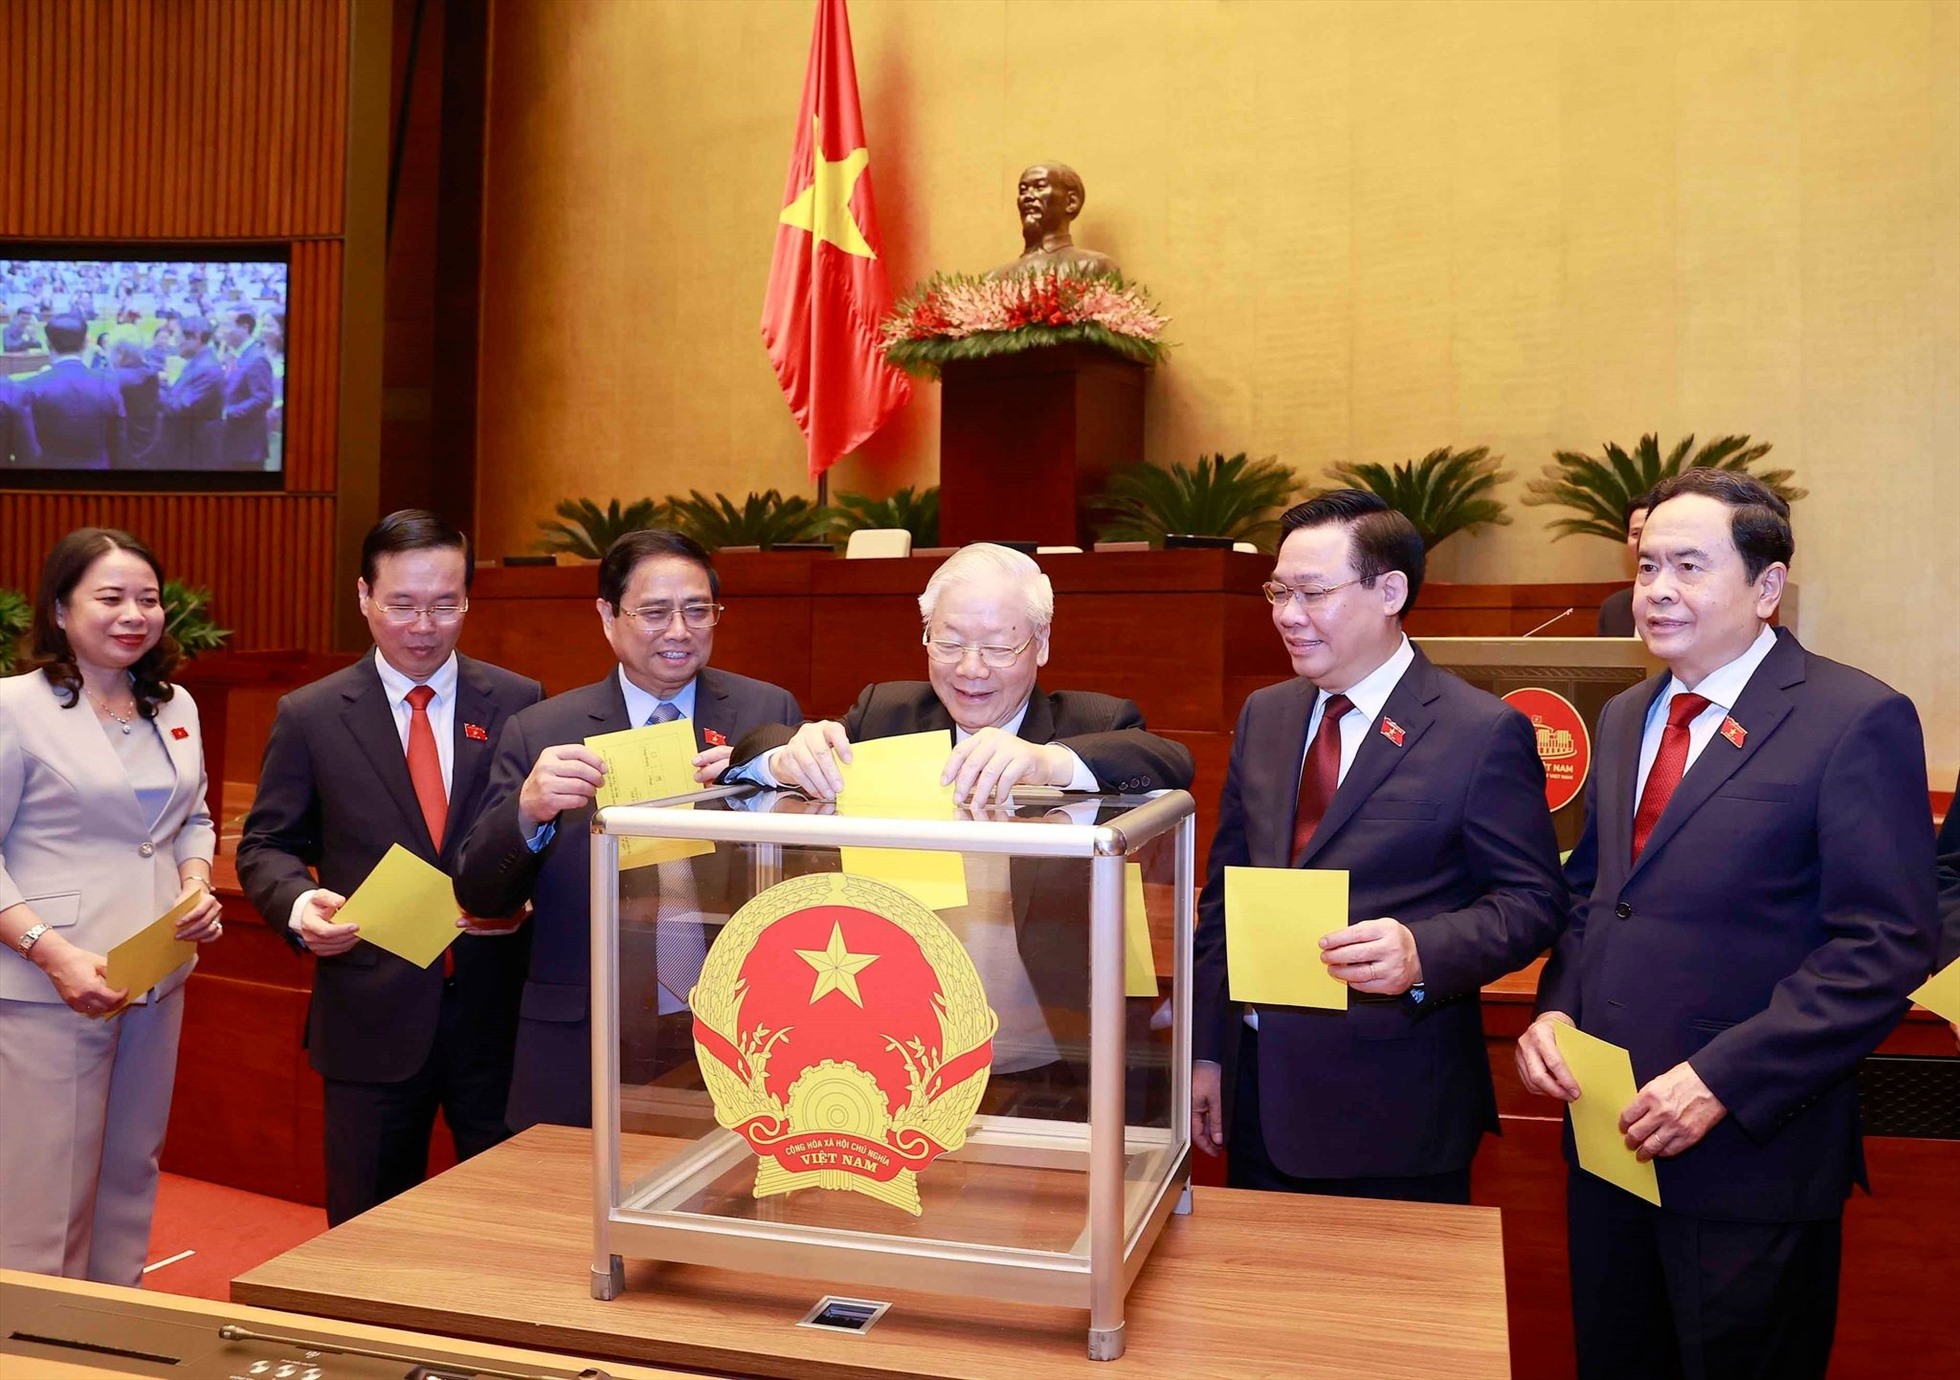 Tổng Bí thư Nguyễn Phú Trọng và các lãnh đạo Đảng, Nhà nước bỏ phiếu bầu Chủ tịch nước. Ảnh: TTXVN